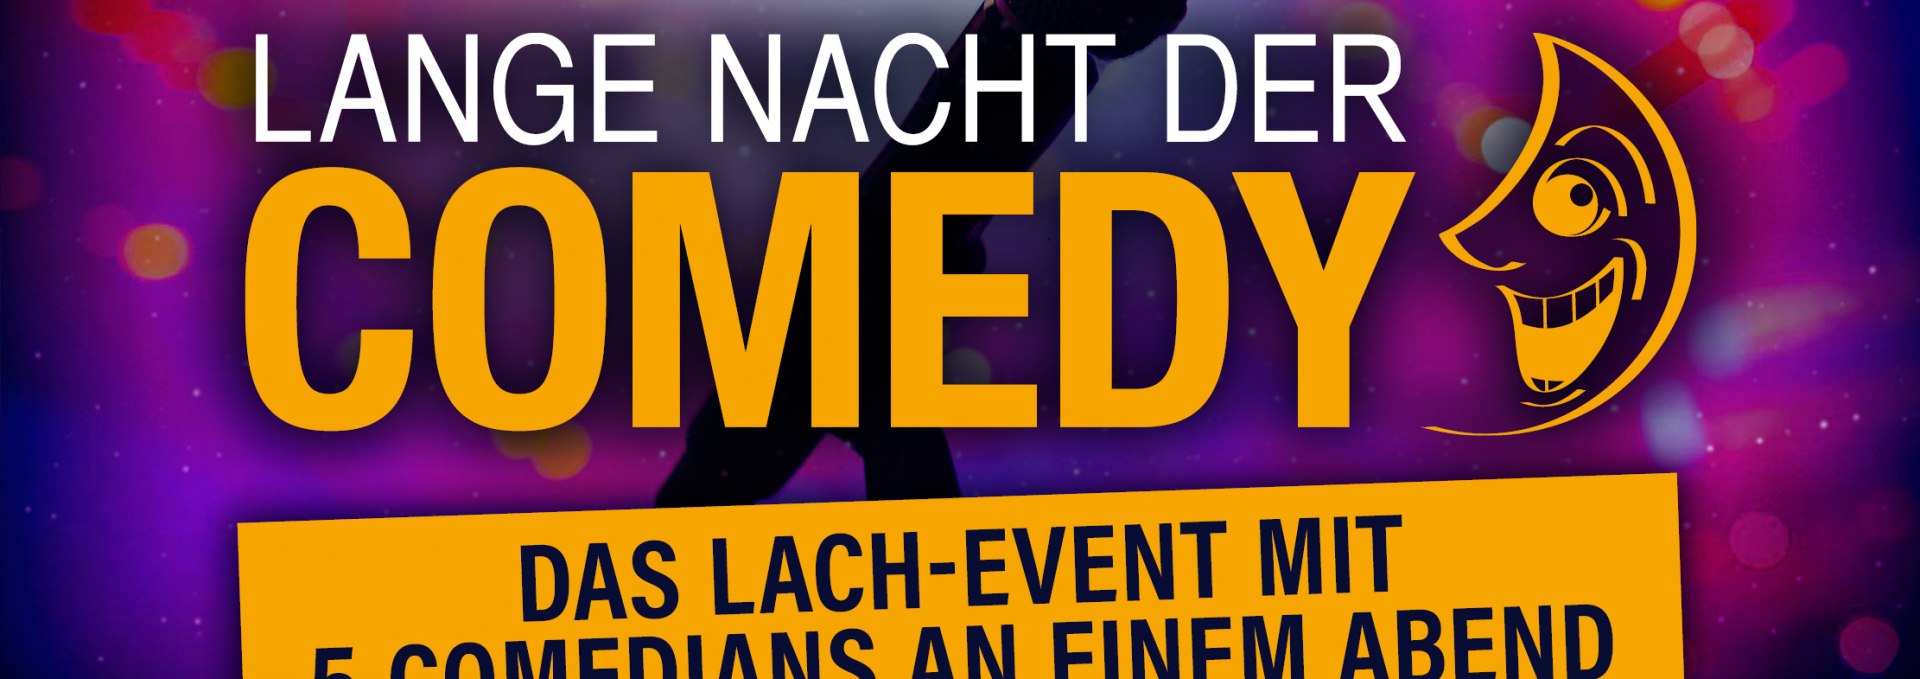 Das Lach-Event mit 5 Comedians an einem Abend, © Lange Nacht der Comedy